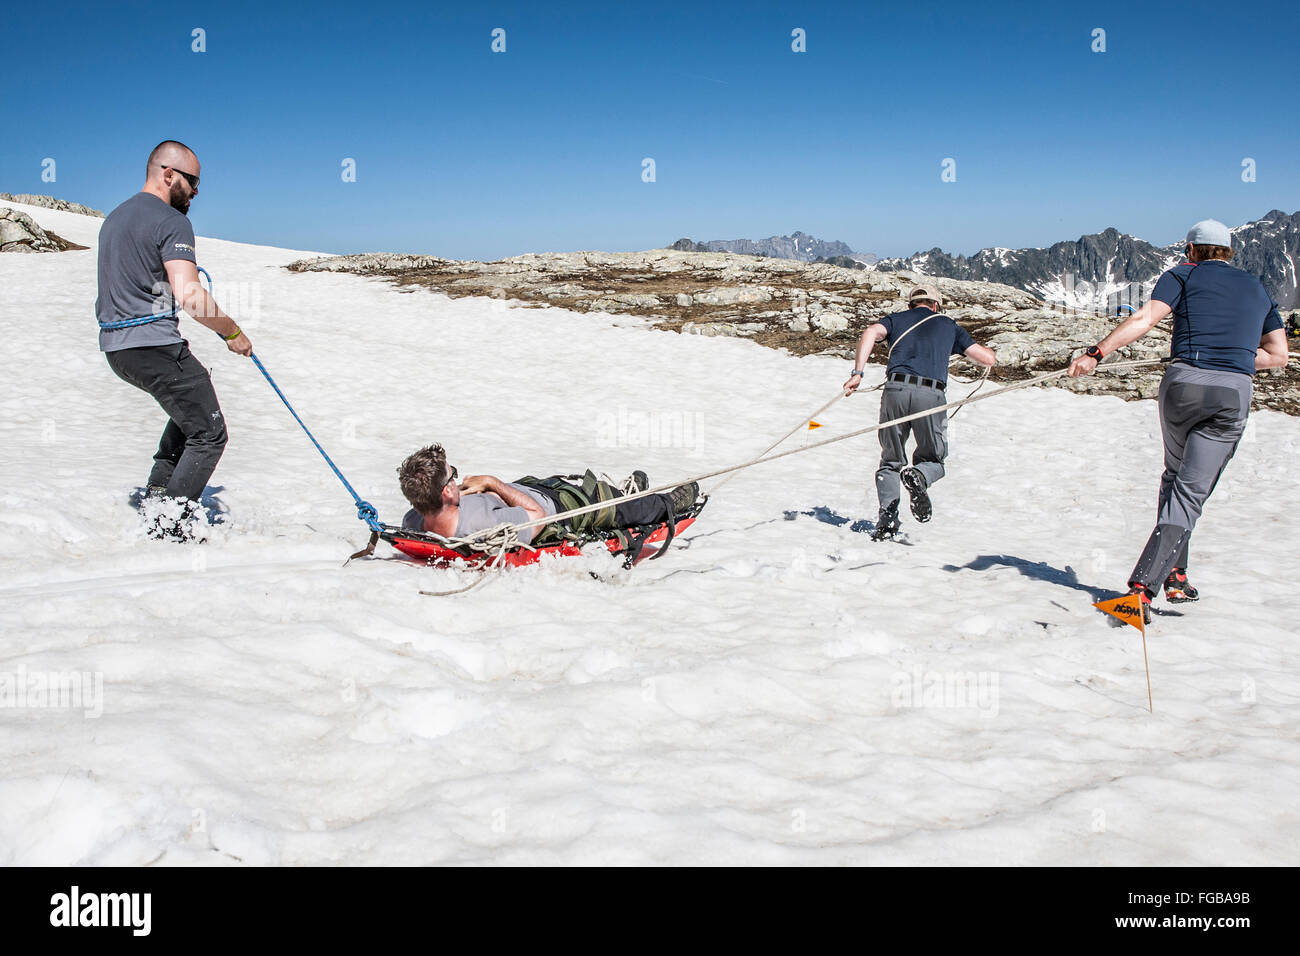 La formation de personnes pour une évacuation d'urgence en traîneau dans les alpes françaises Banque D'Images